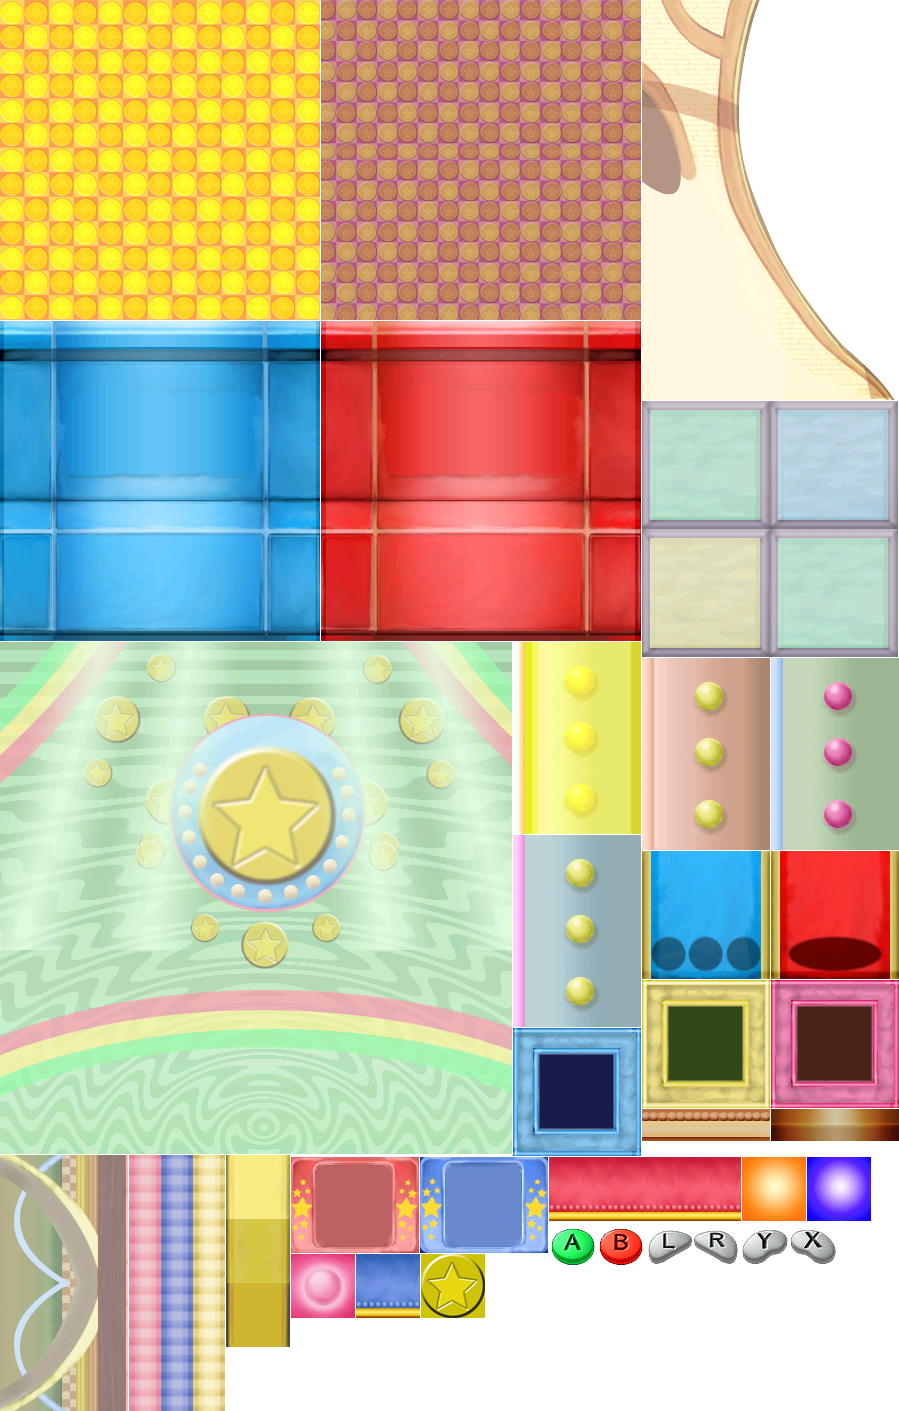 Mario Party 7 - Coin-op Bop